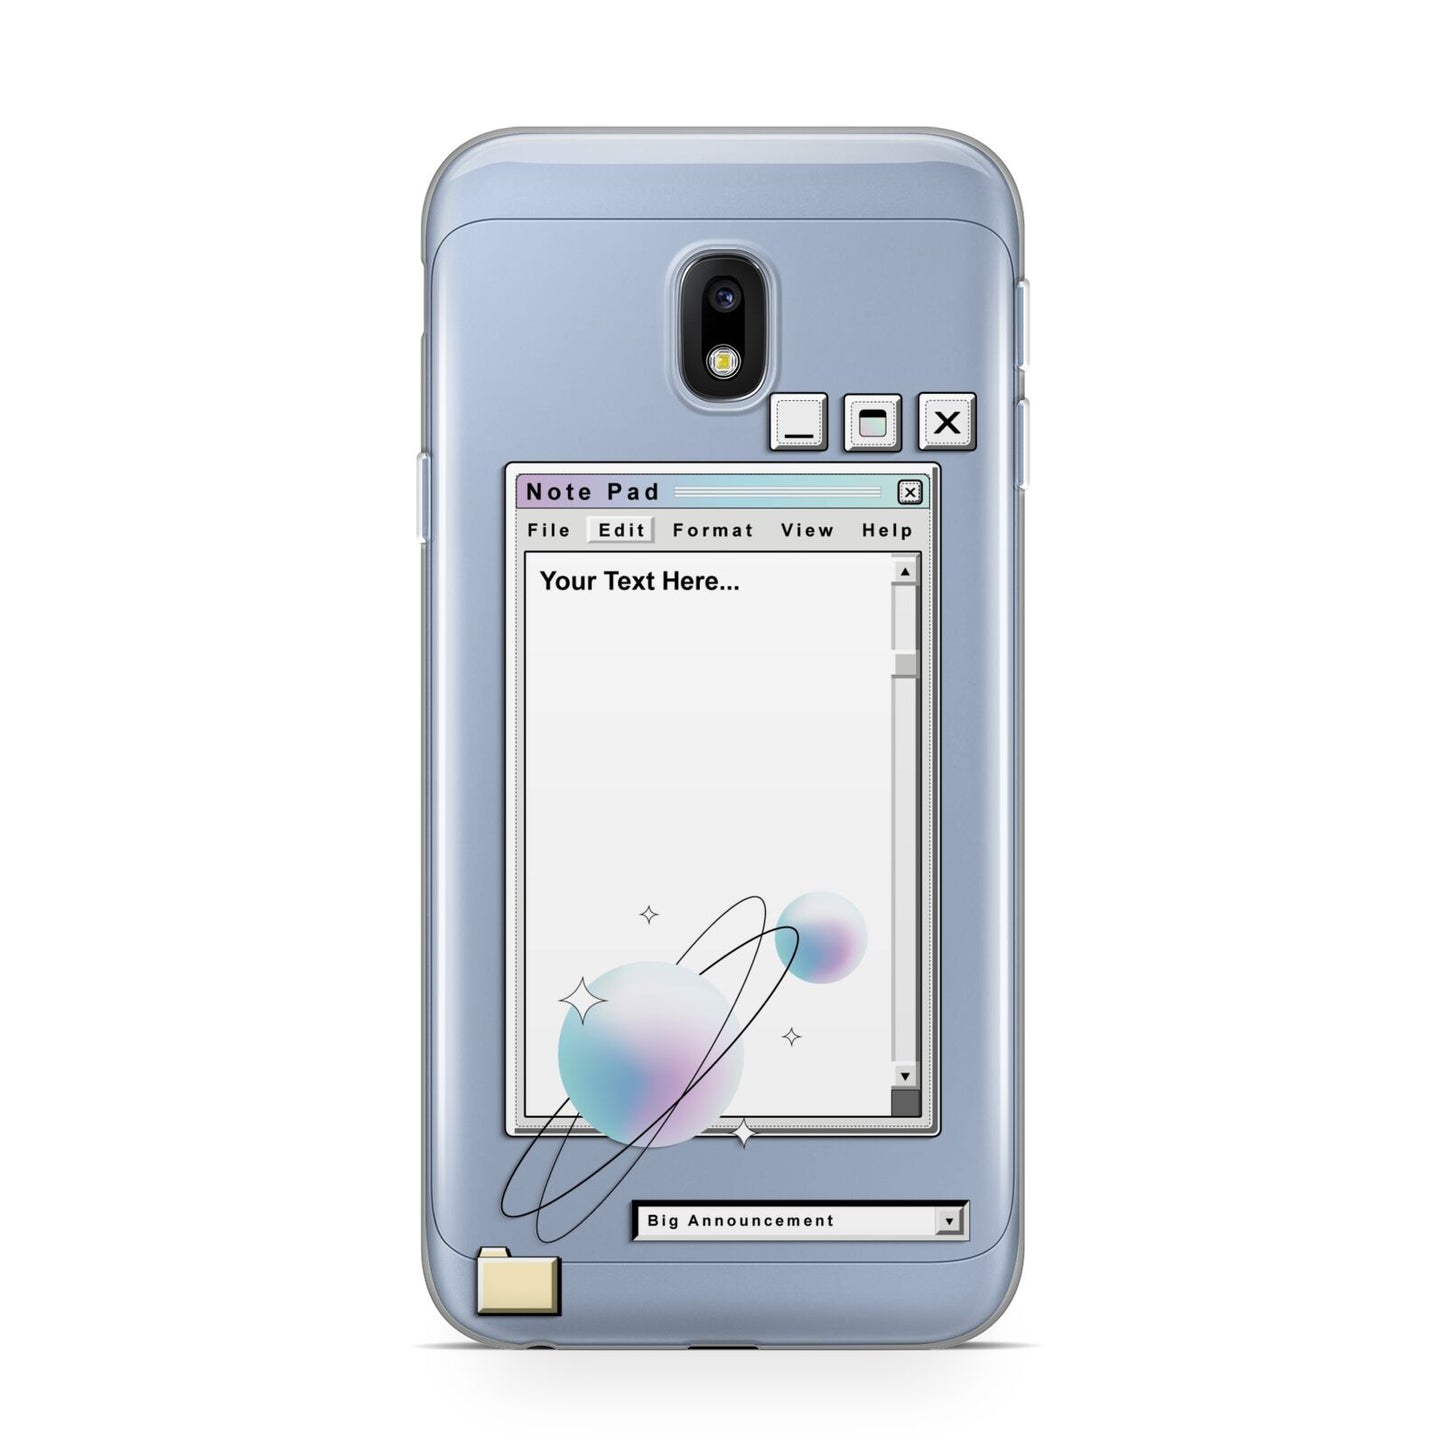 Retro Note Pad Samsung Galaxy J3 2017 Case